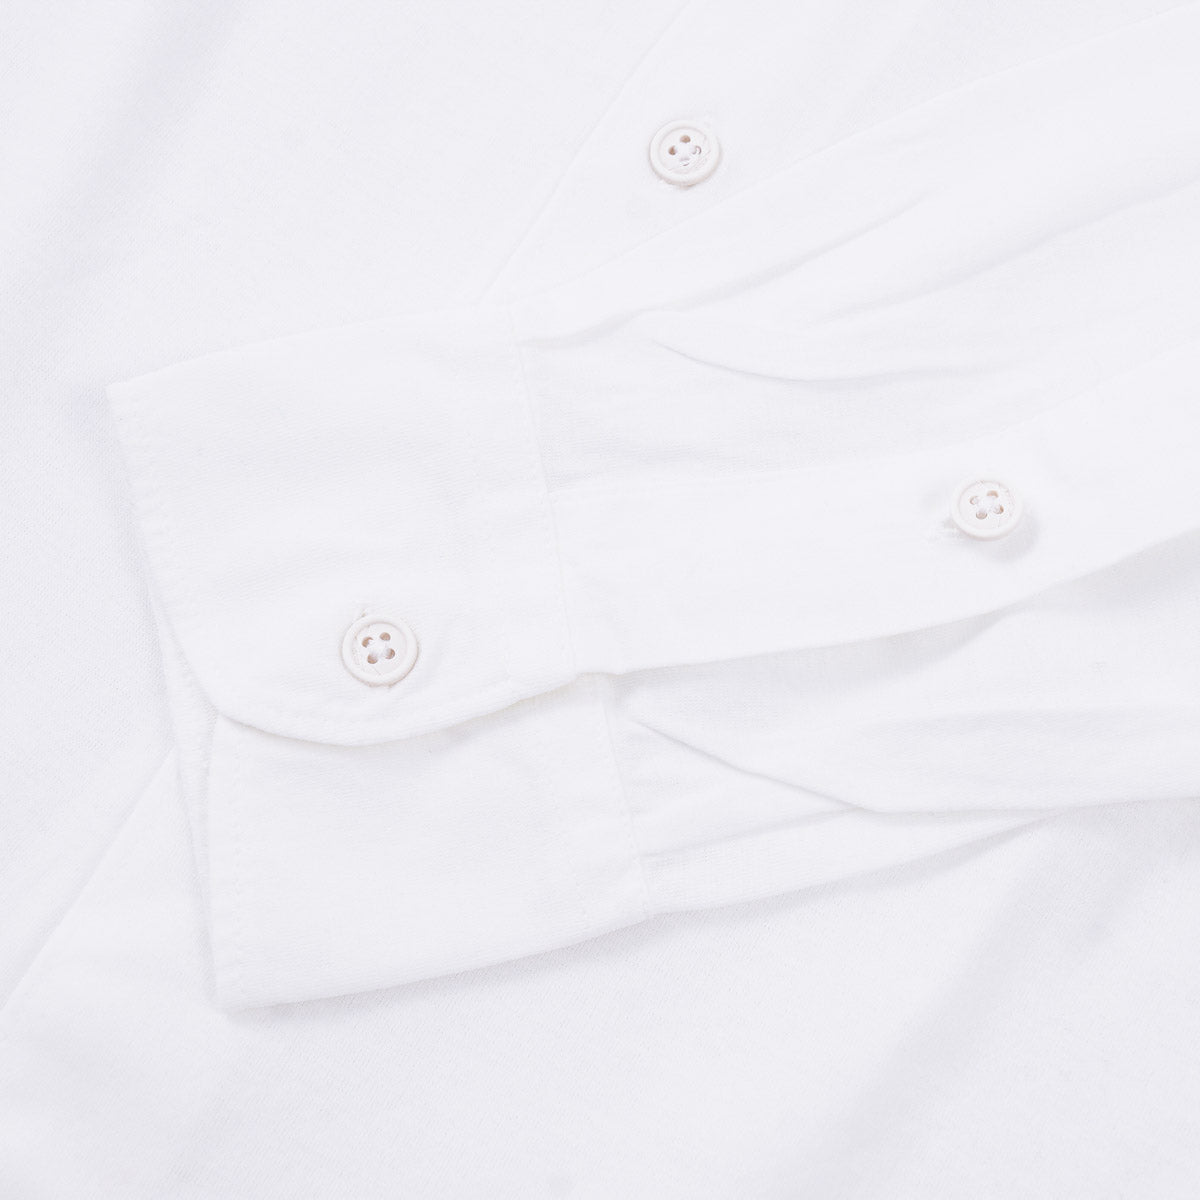 Kired Lightweight Knit Crepe Cotton Shirt - Top Shelf Apparel